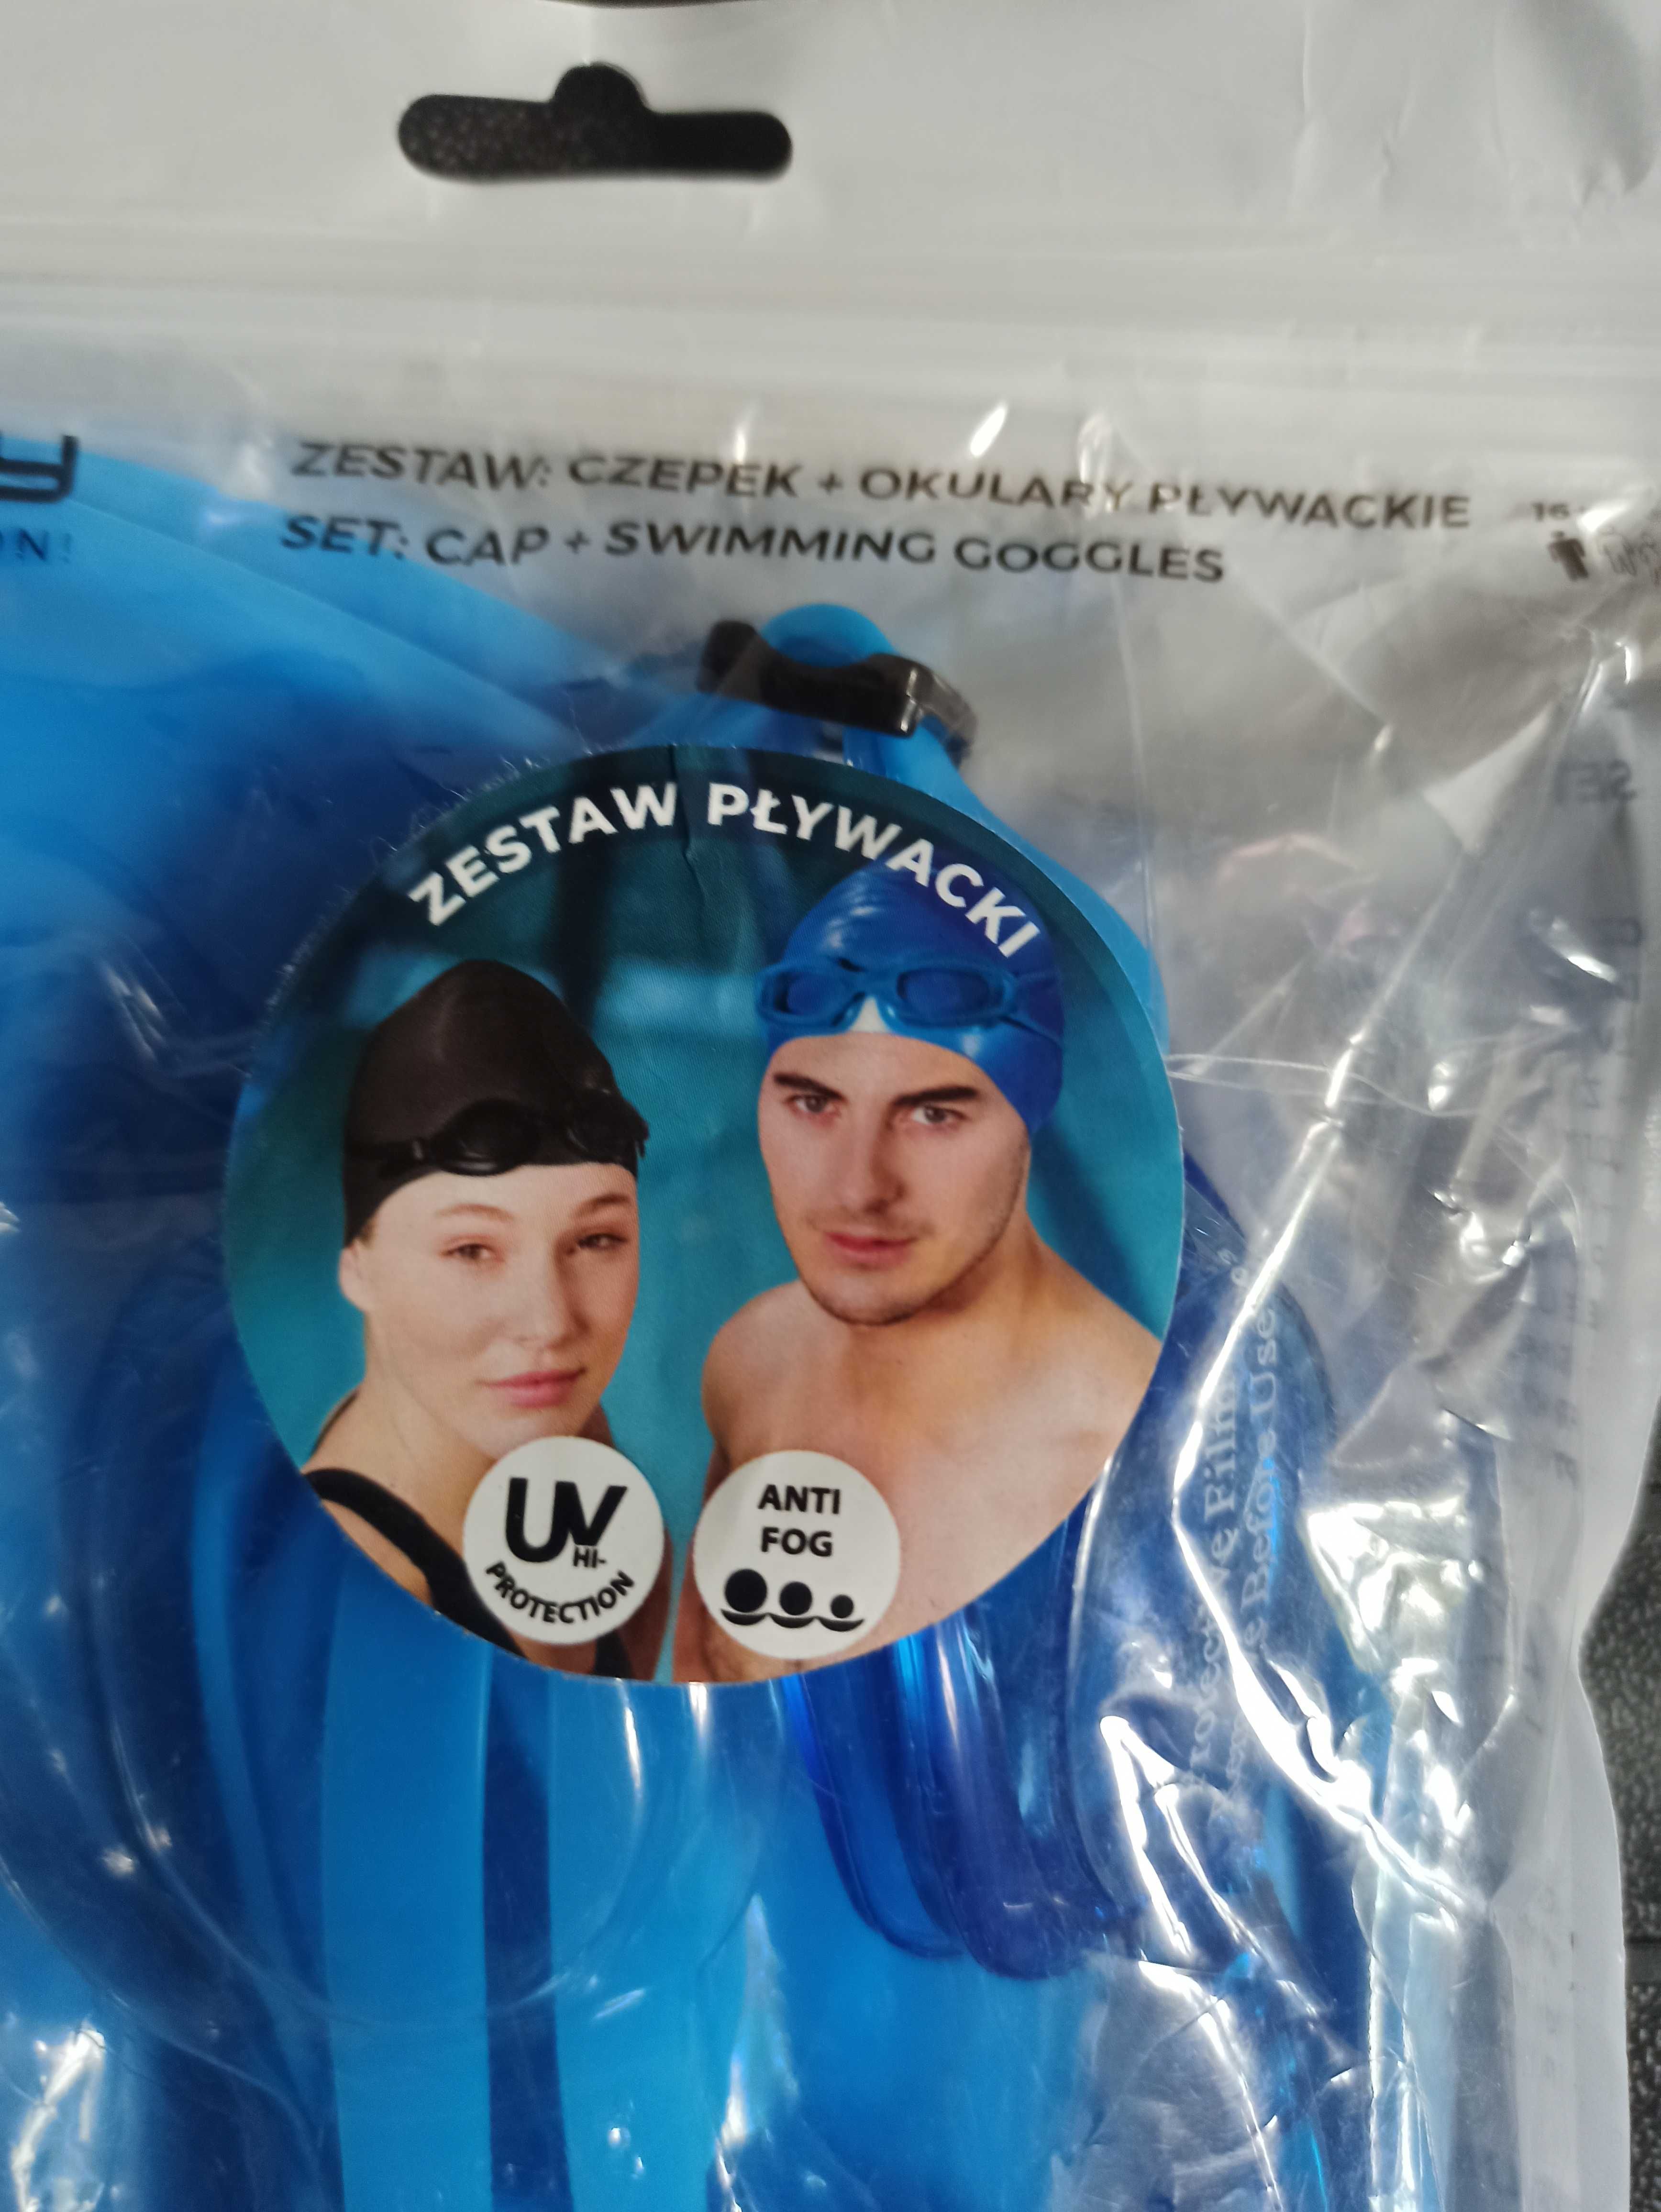 Zestaw pływacki czepek silikonowy  i okulary